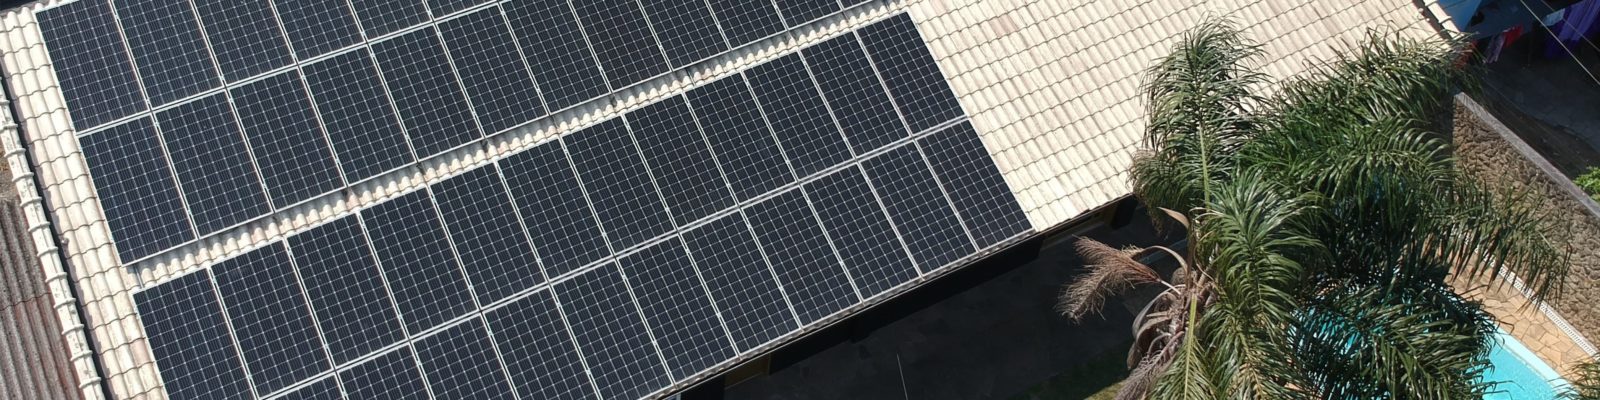 Energia solar residencial em Canoas - Elysia sistema fotovoltaico RS